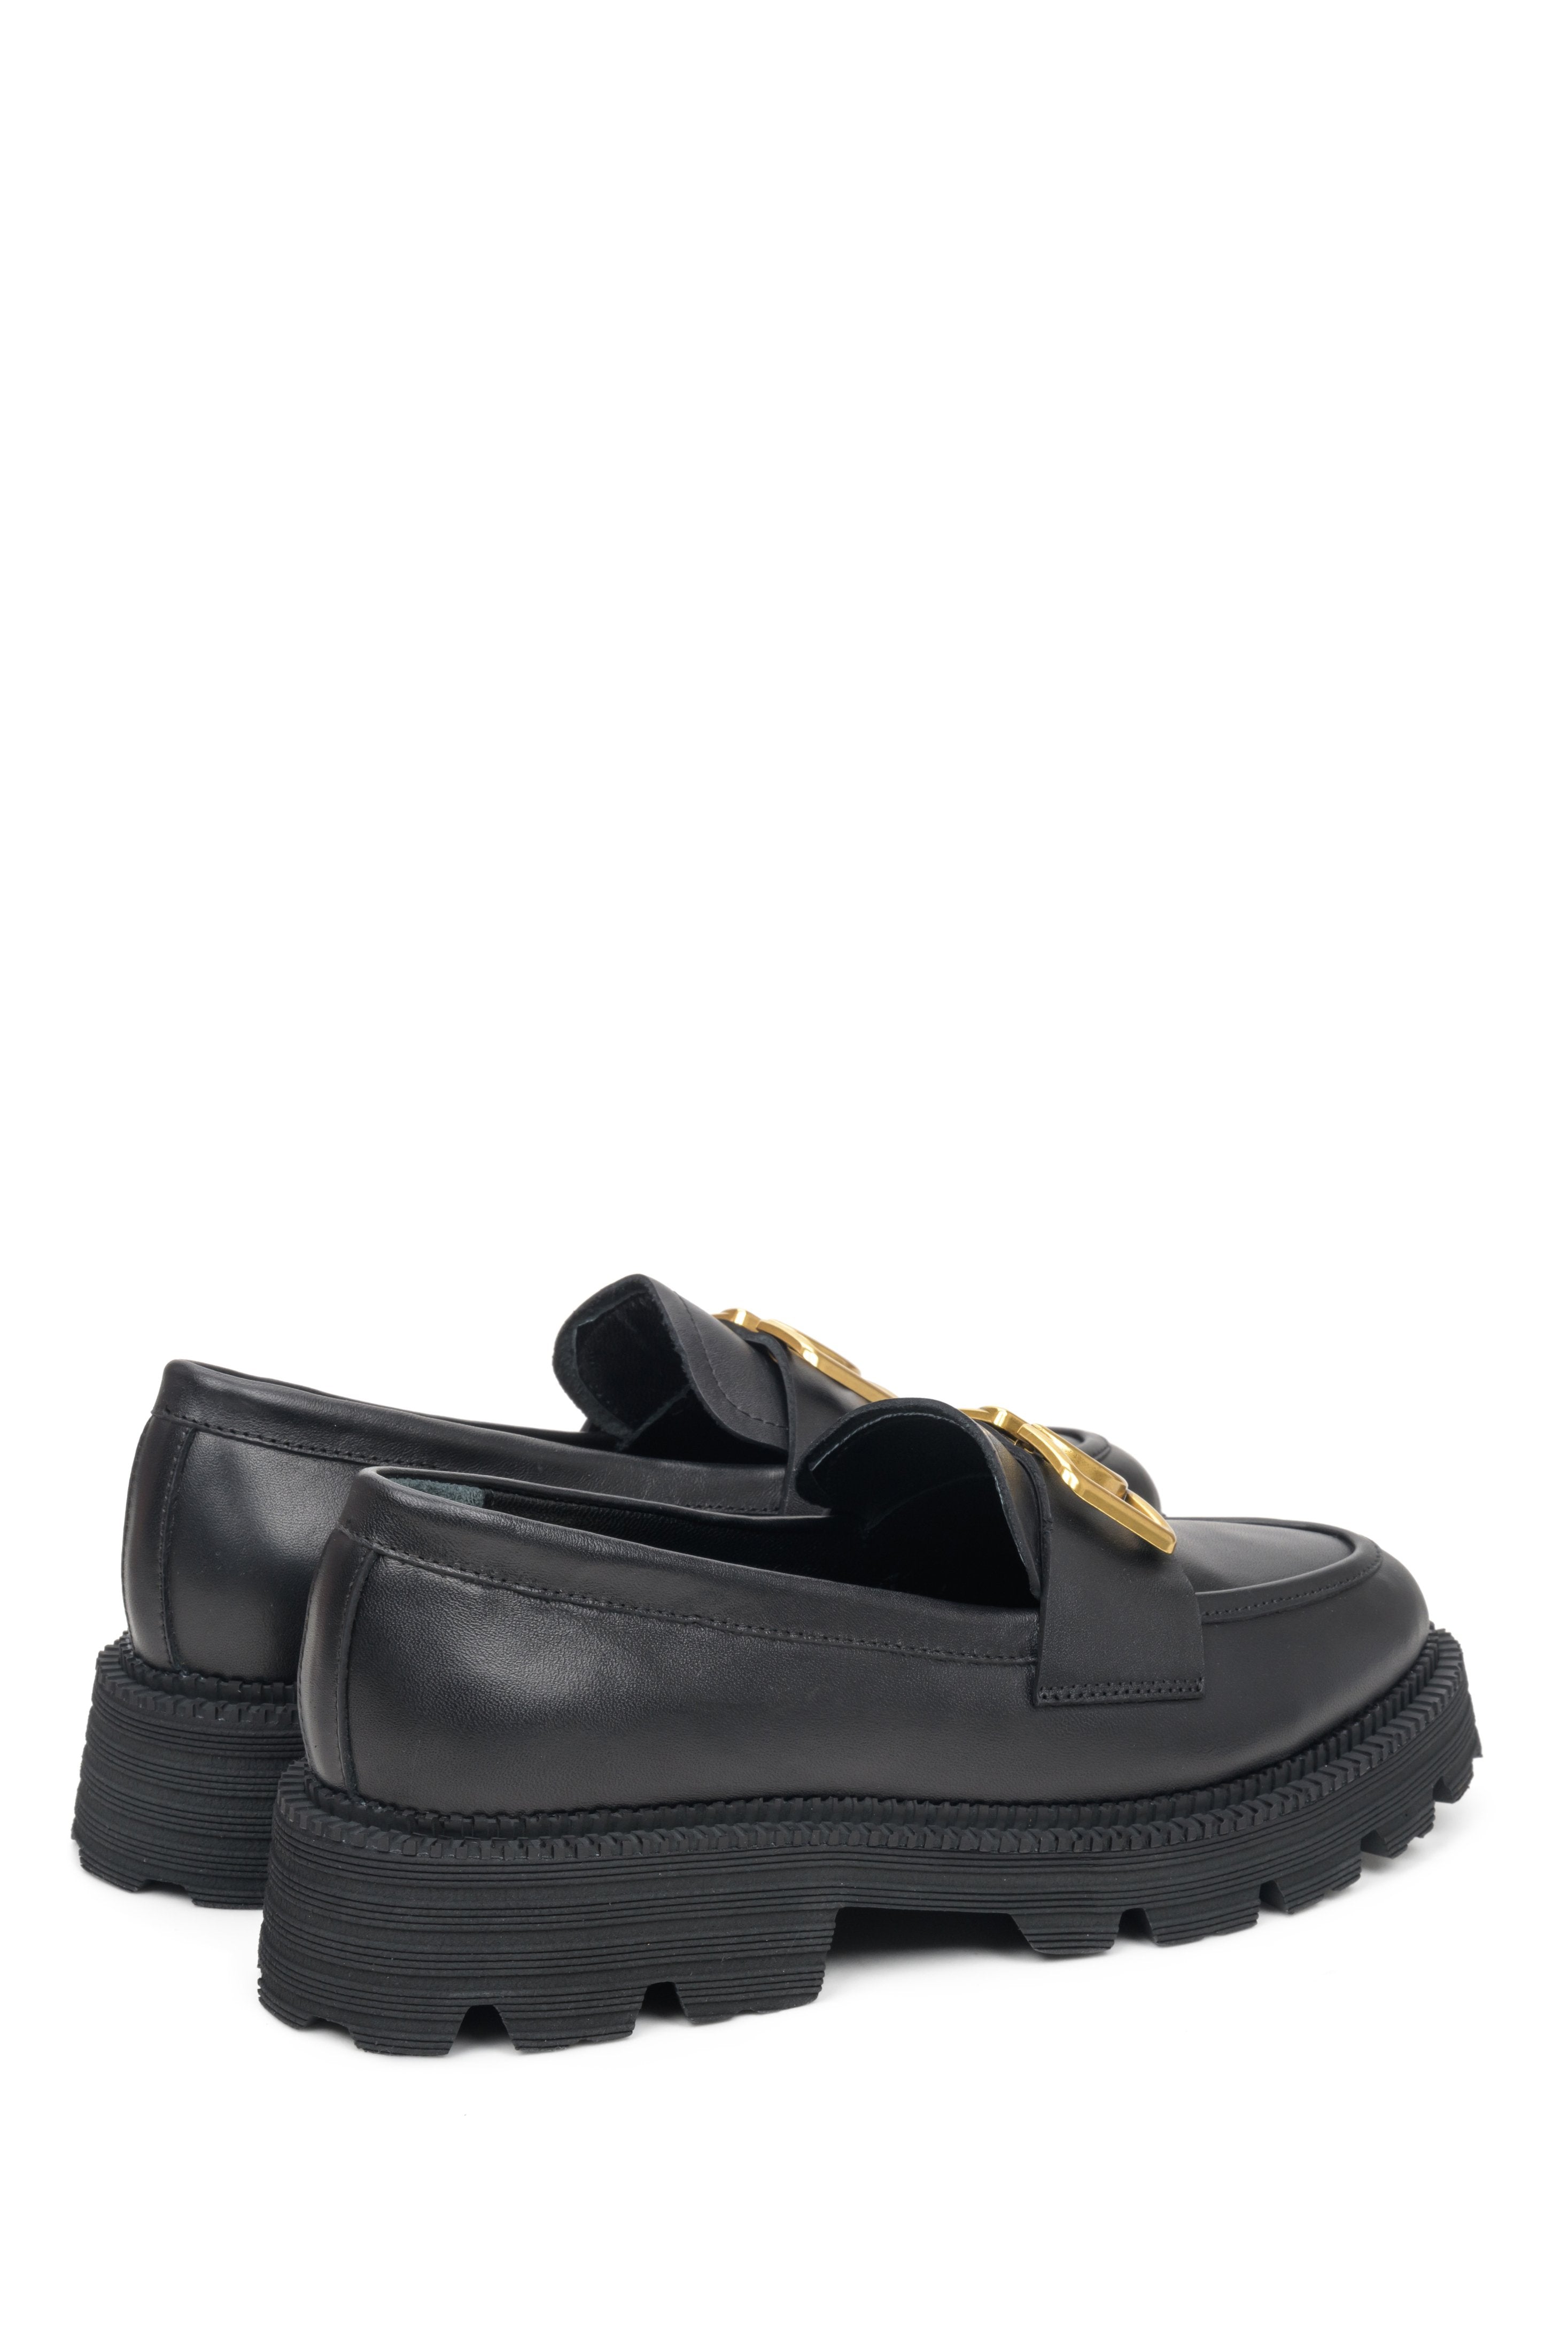 Skórzane mokasyny damskie na grubej podeszwie w kolorze czarnym - zbliżenie na zapiętek i linię boczną buta.